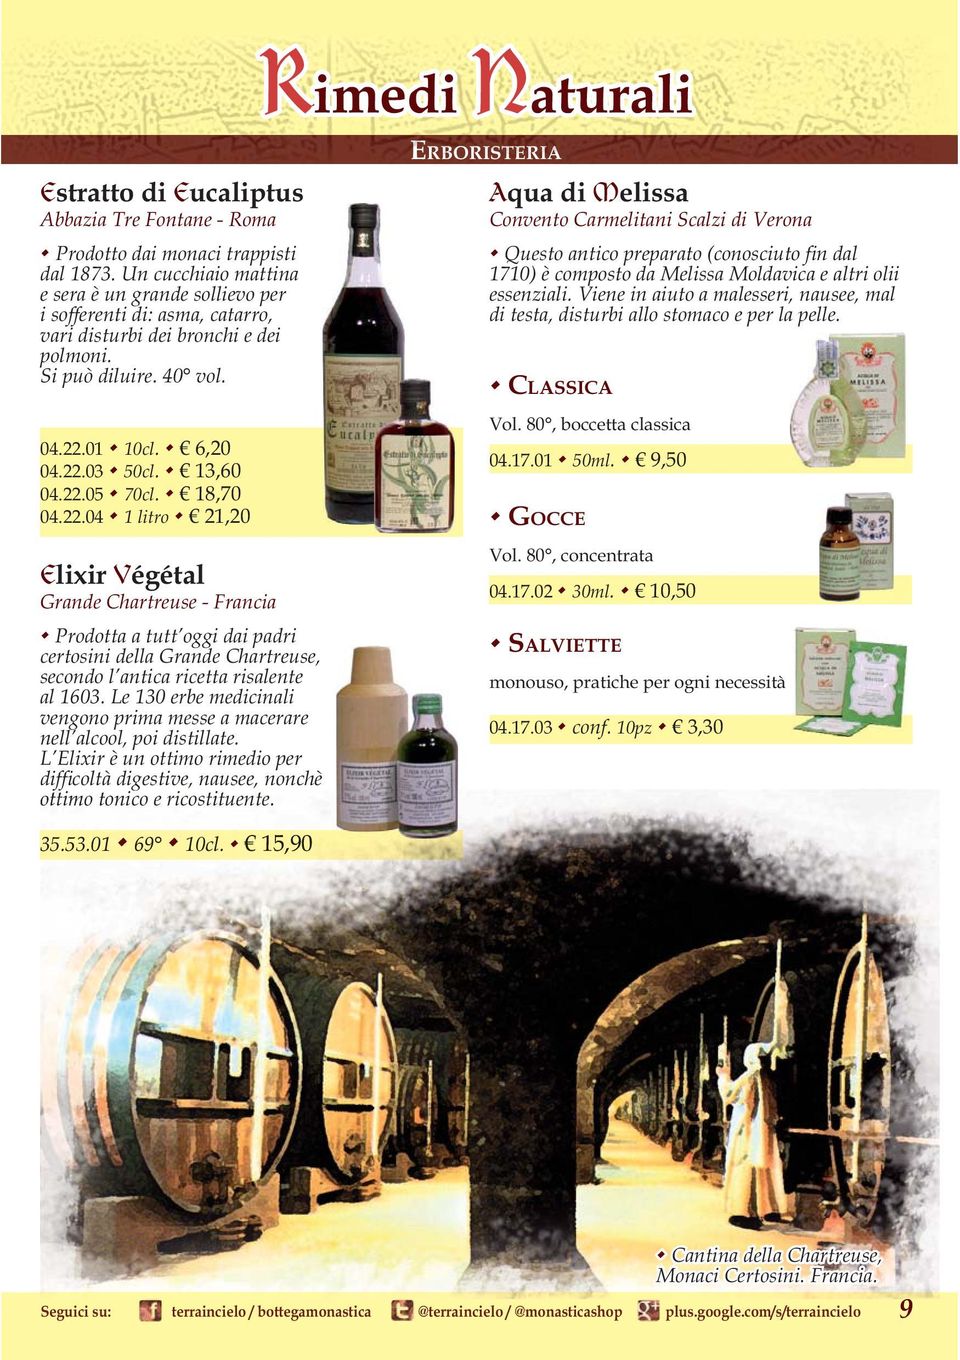 18,70 04.22.04 1 litro 21,20 Elixir Végétal Grande Chartreuse - Francia Prodotta a tutt oggi dai padri certosini della Grande Chartreuse, secondo l antica ricetta risalente al 1603.